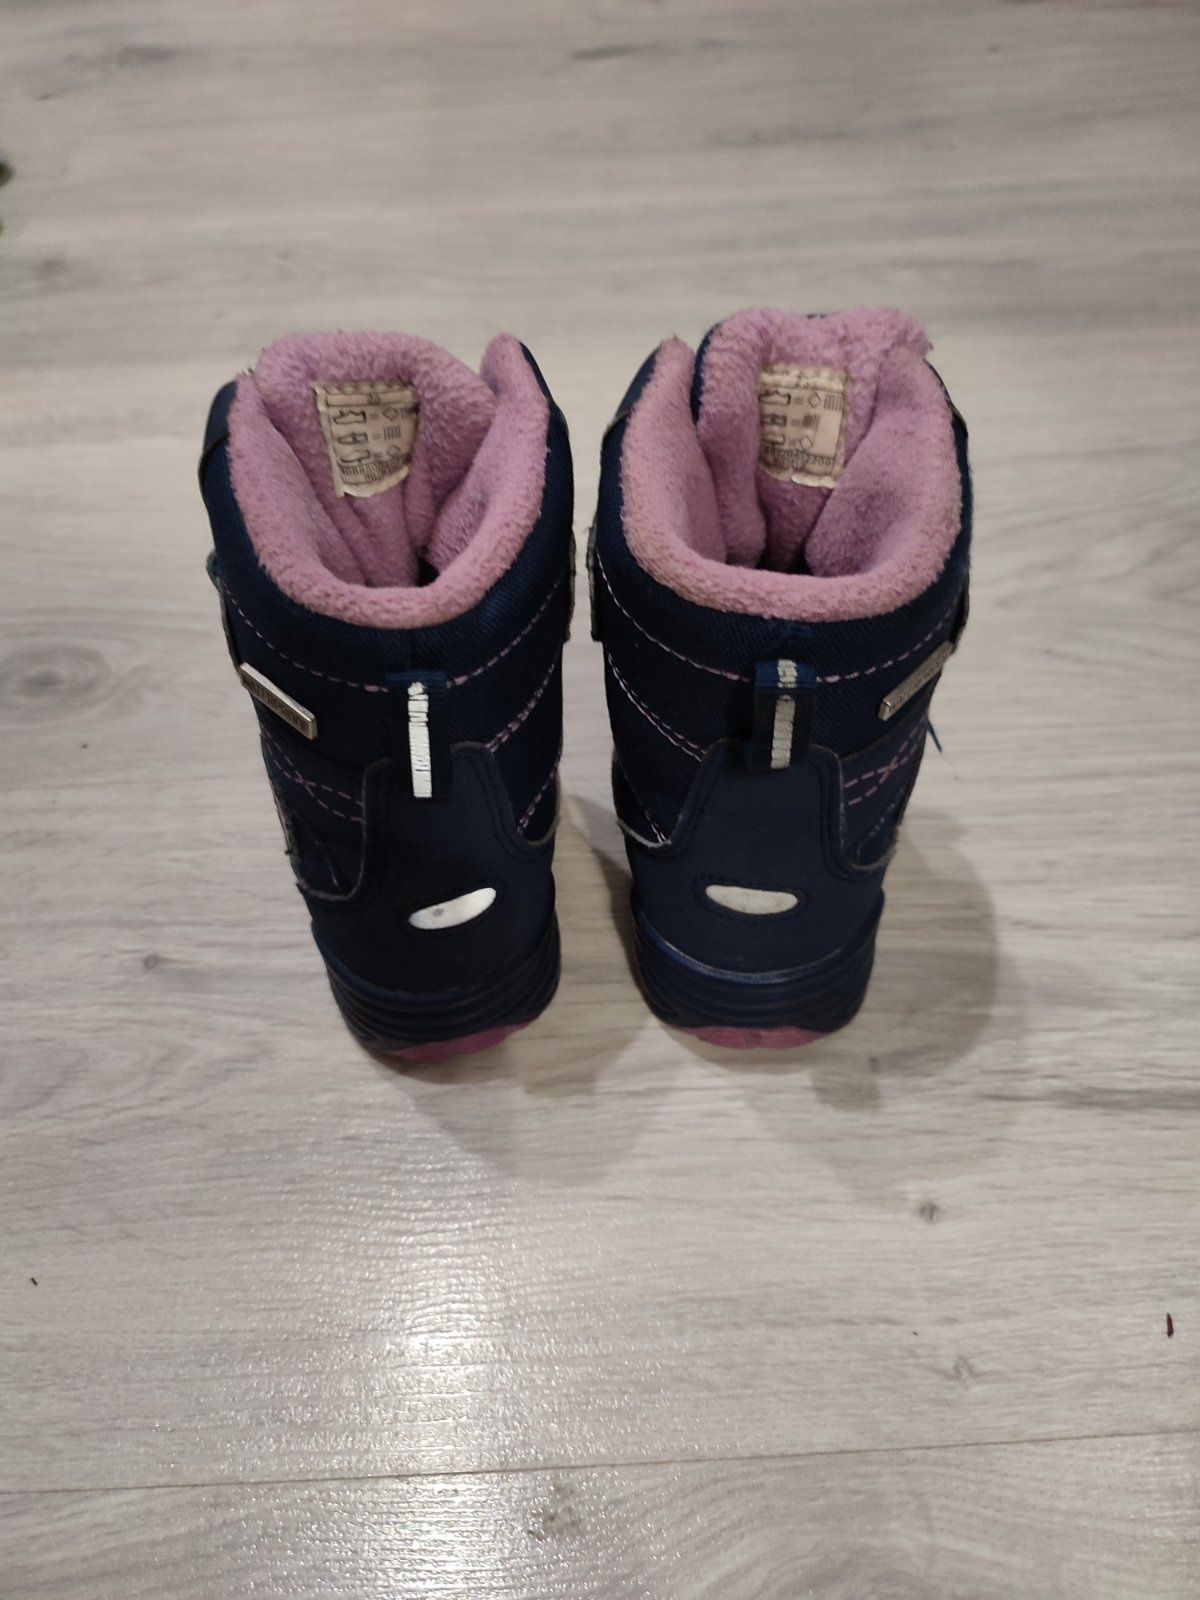 Зимові теплі чобітки для дівчинки, сапожки, 23 розмір, 14.5 см устілка